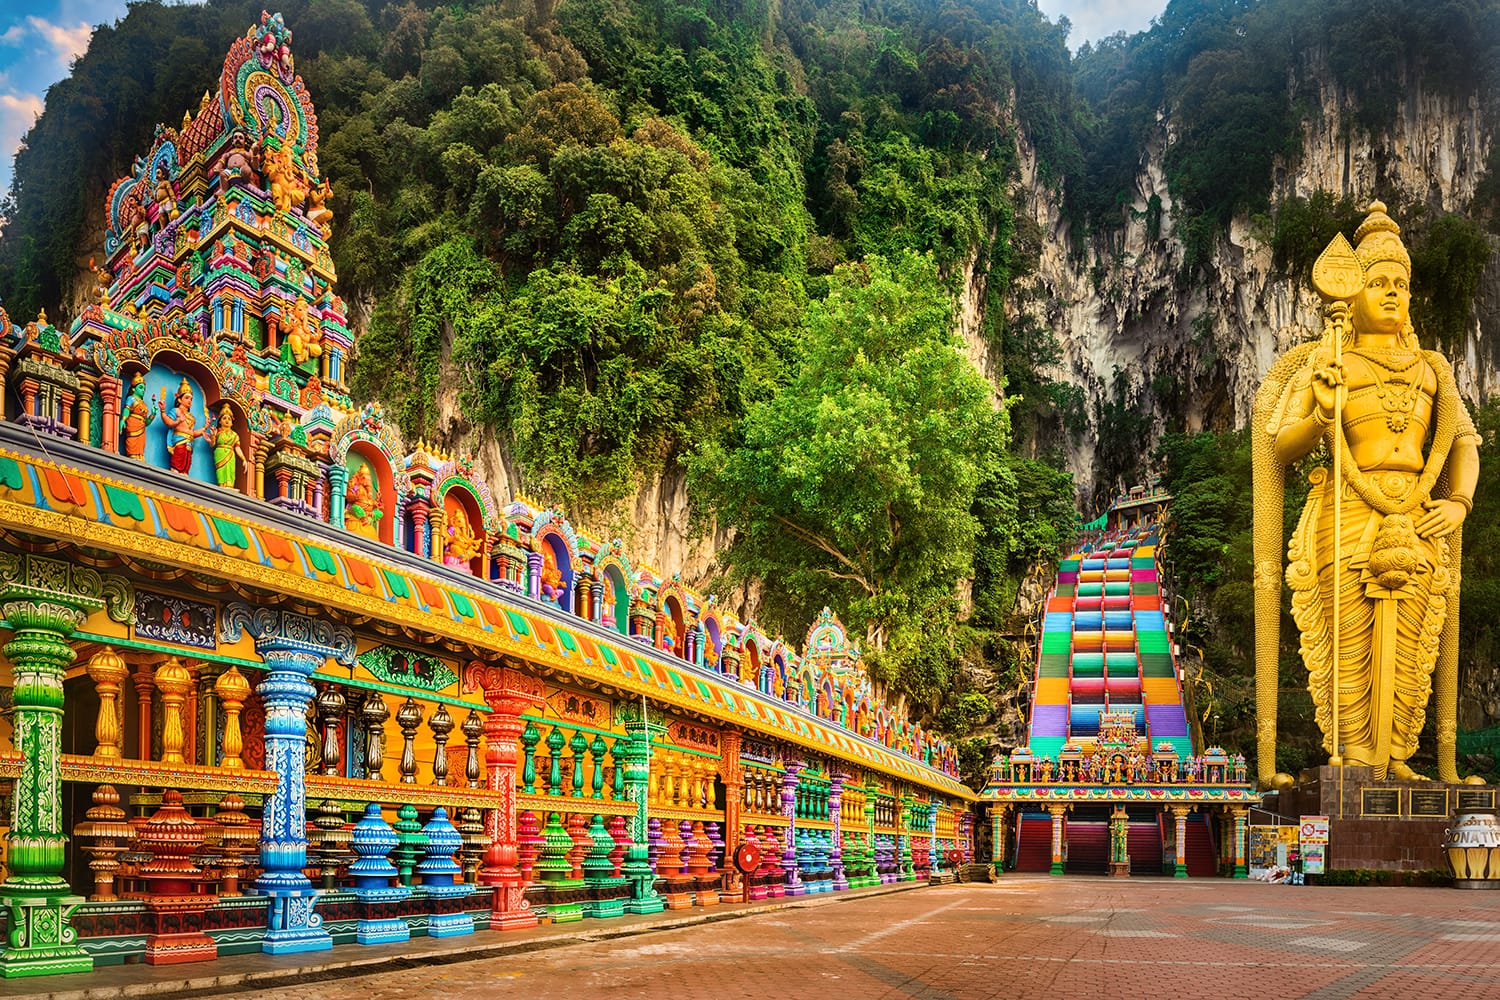 Beautiful view of colorful stairs of Batu caves, Kuala Lumpur, Malaysia